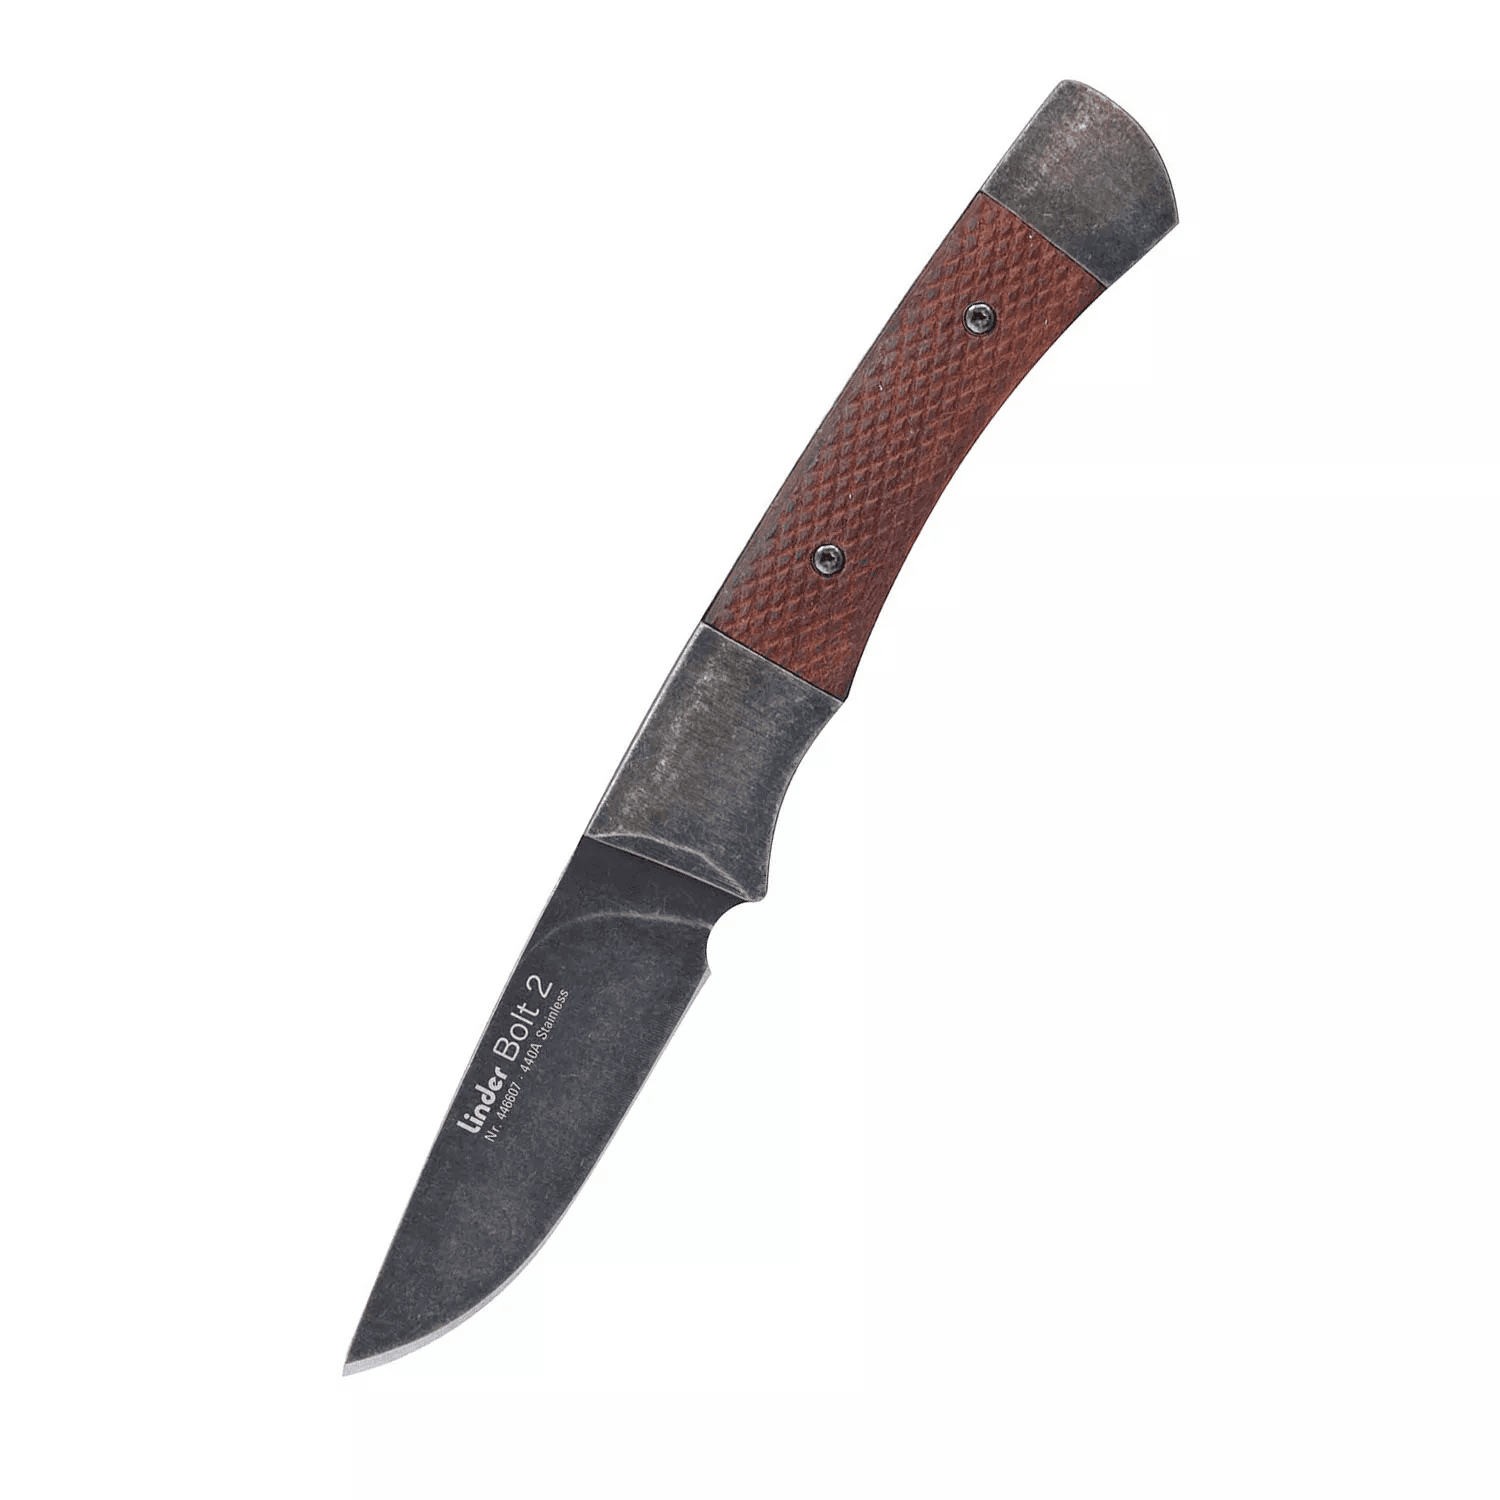 Nůž s pevnou čepelí Bolt 2 a koženým pouzdrem Linder® 446607